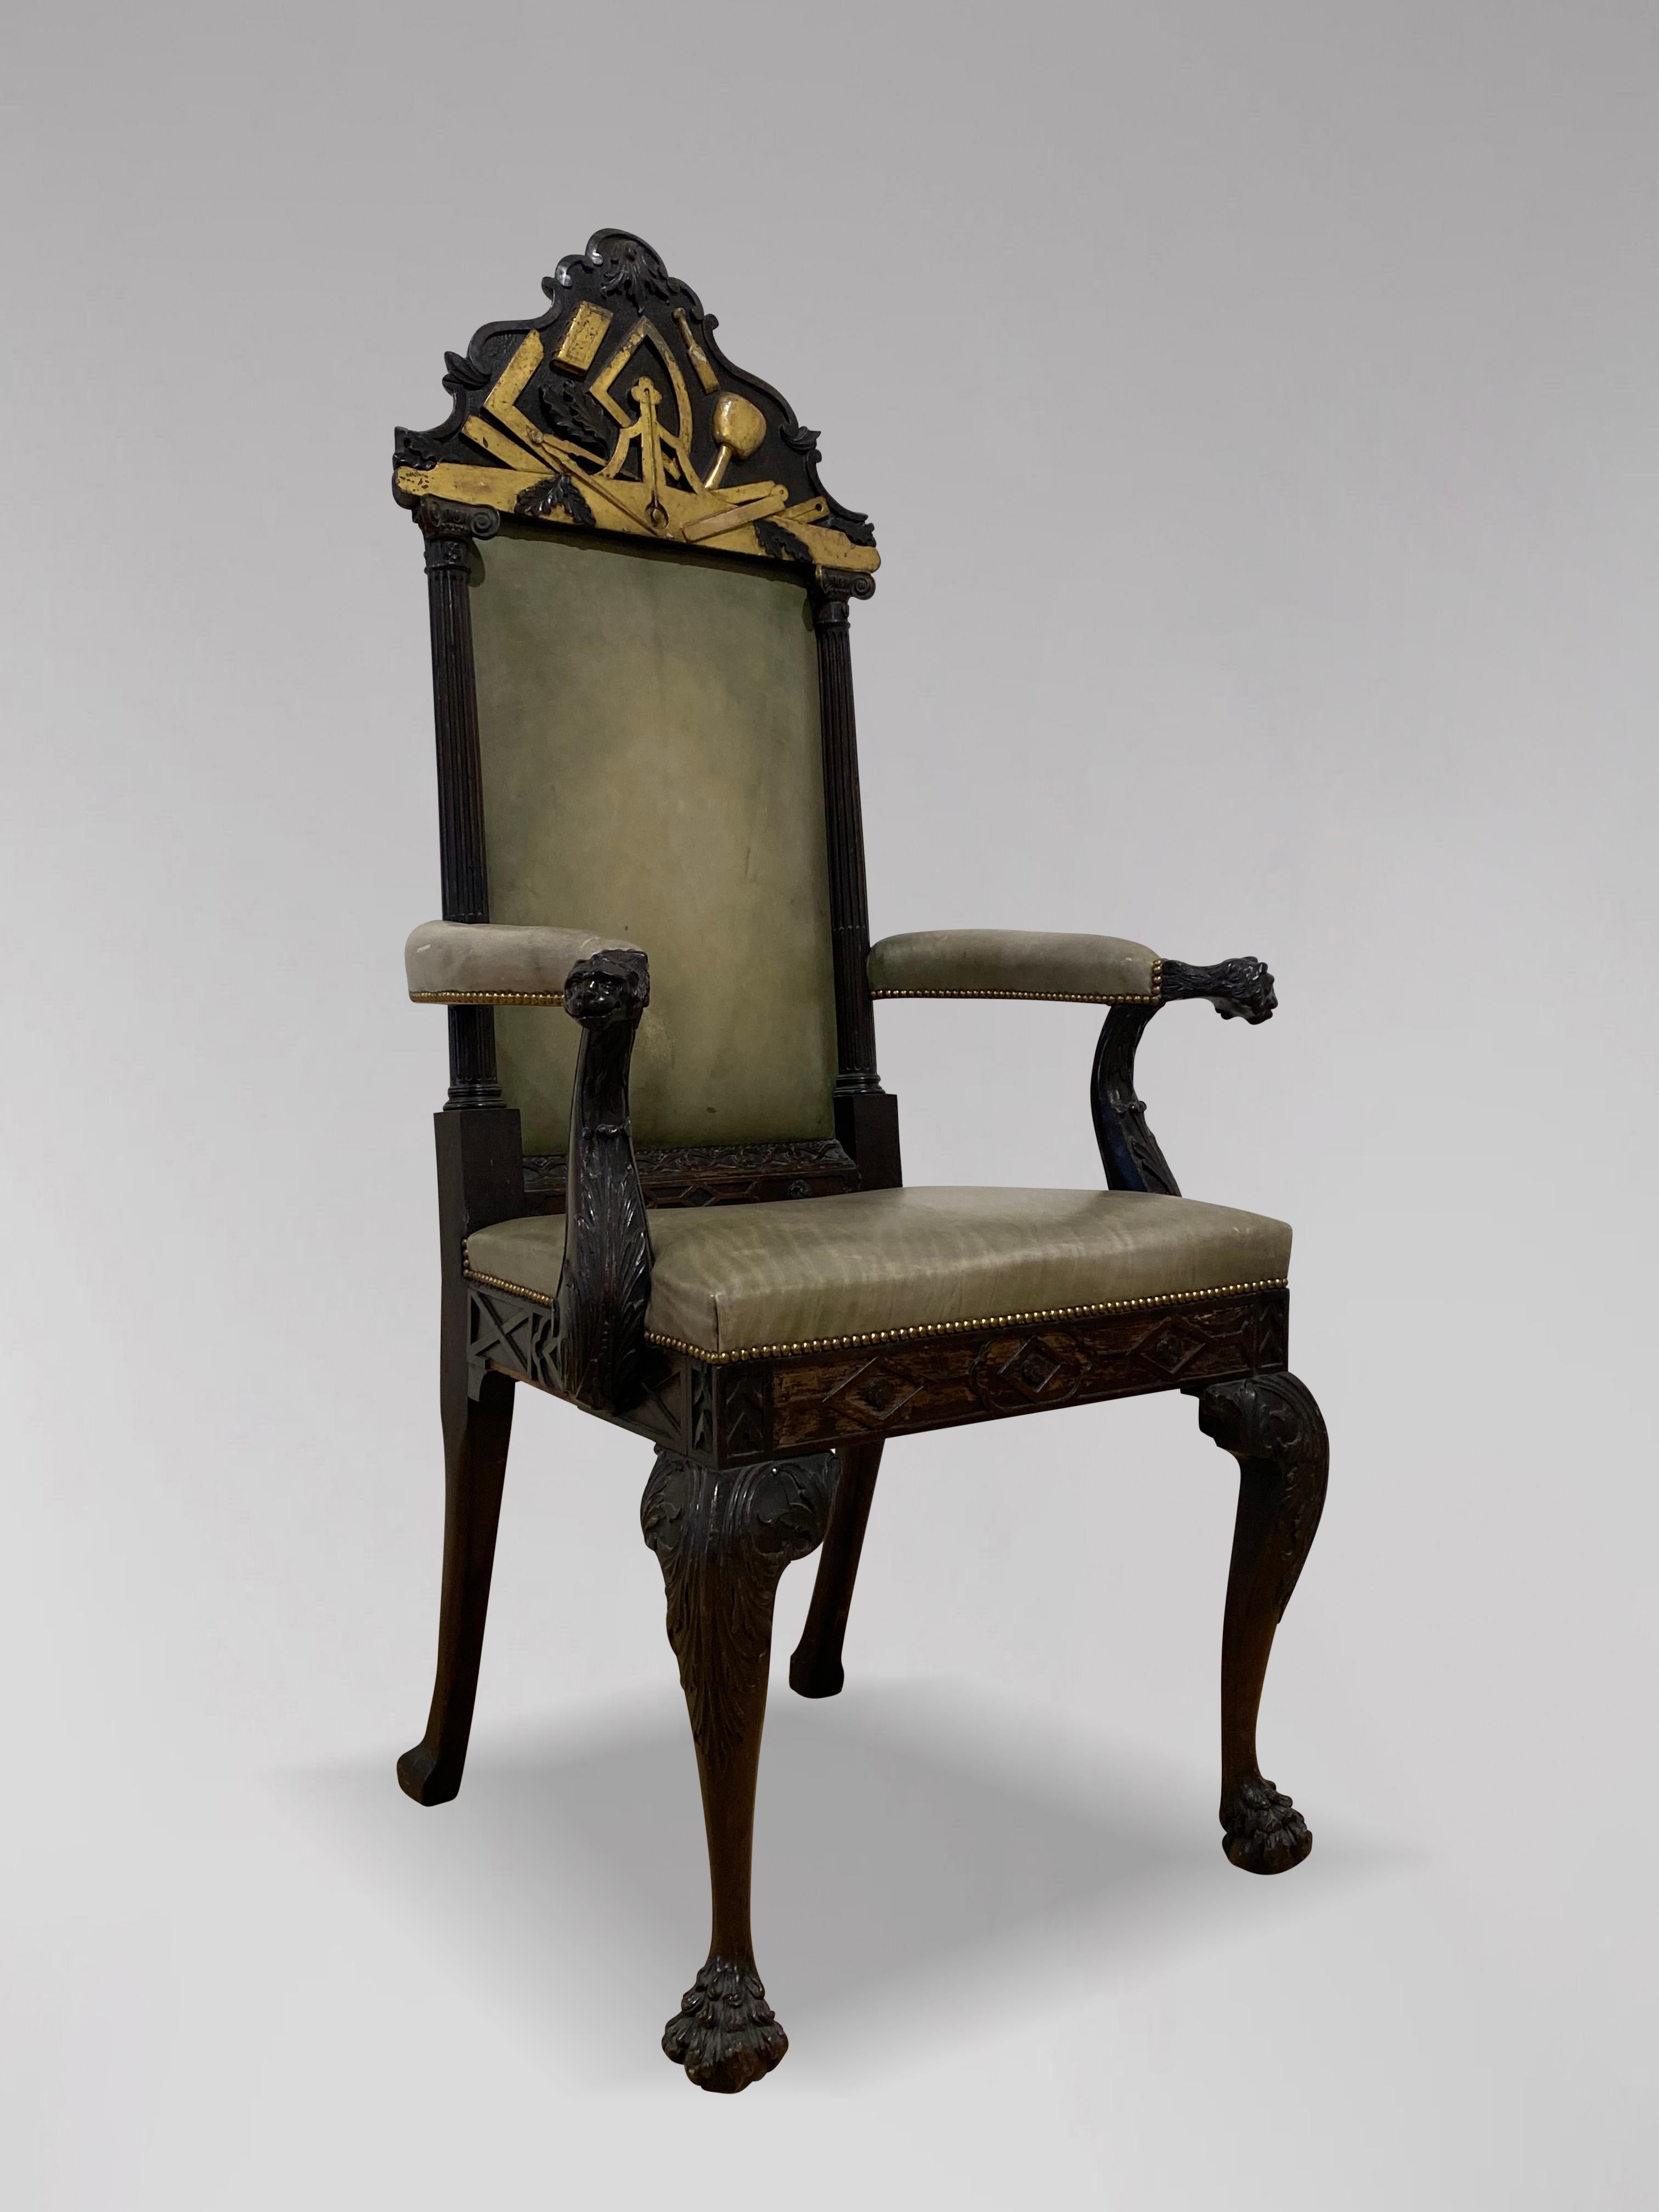 Impressionnant fauteuil trône maçonnique du XIXe siècle en acajou, partiellement doré. Le haut dossier, orné de plaques maçonniques sculptées et dorées, est surmonté d'un dossier en cuir vert à colonnes corinthiennes de chaque côté, flanqué